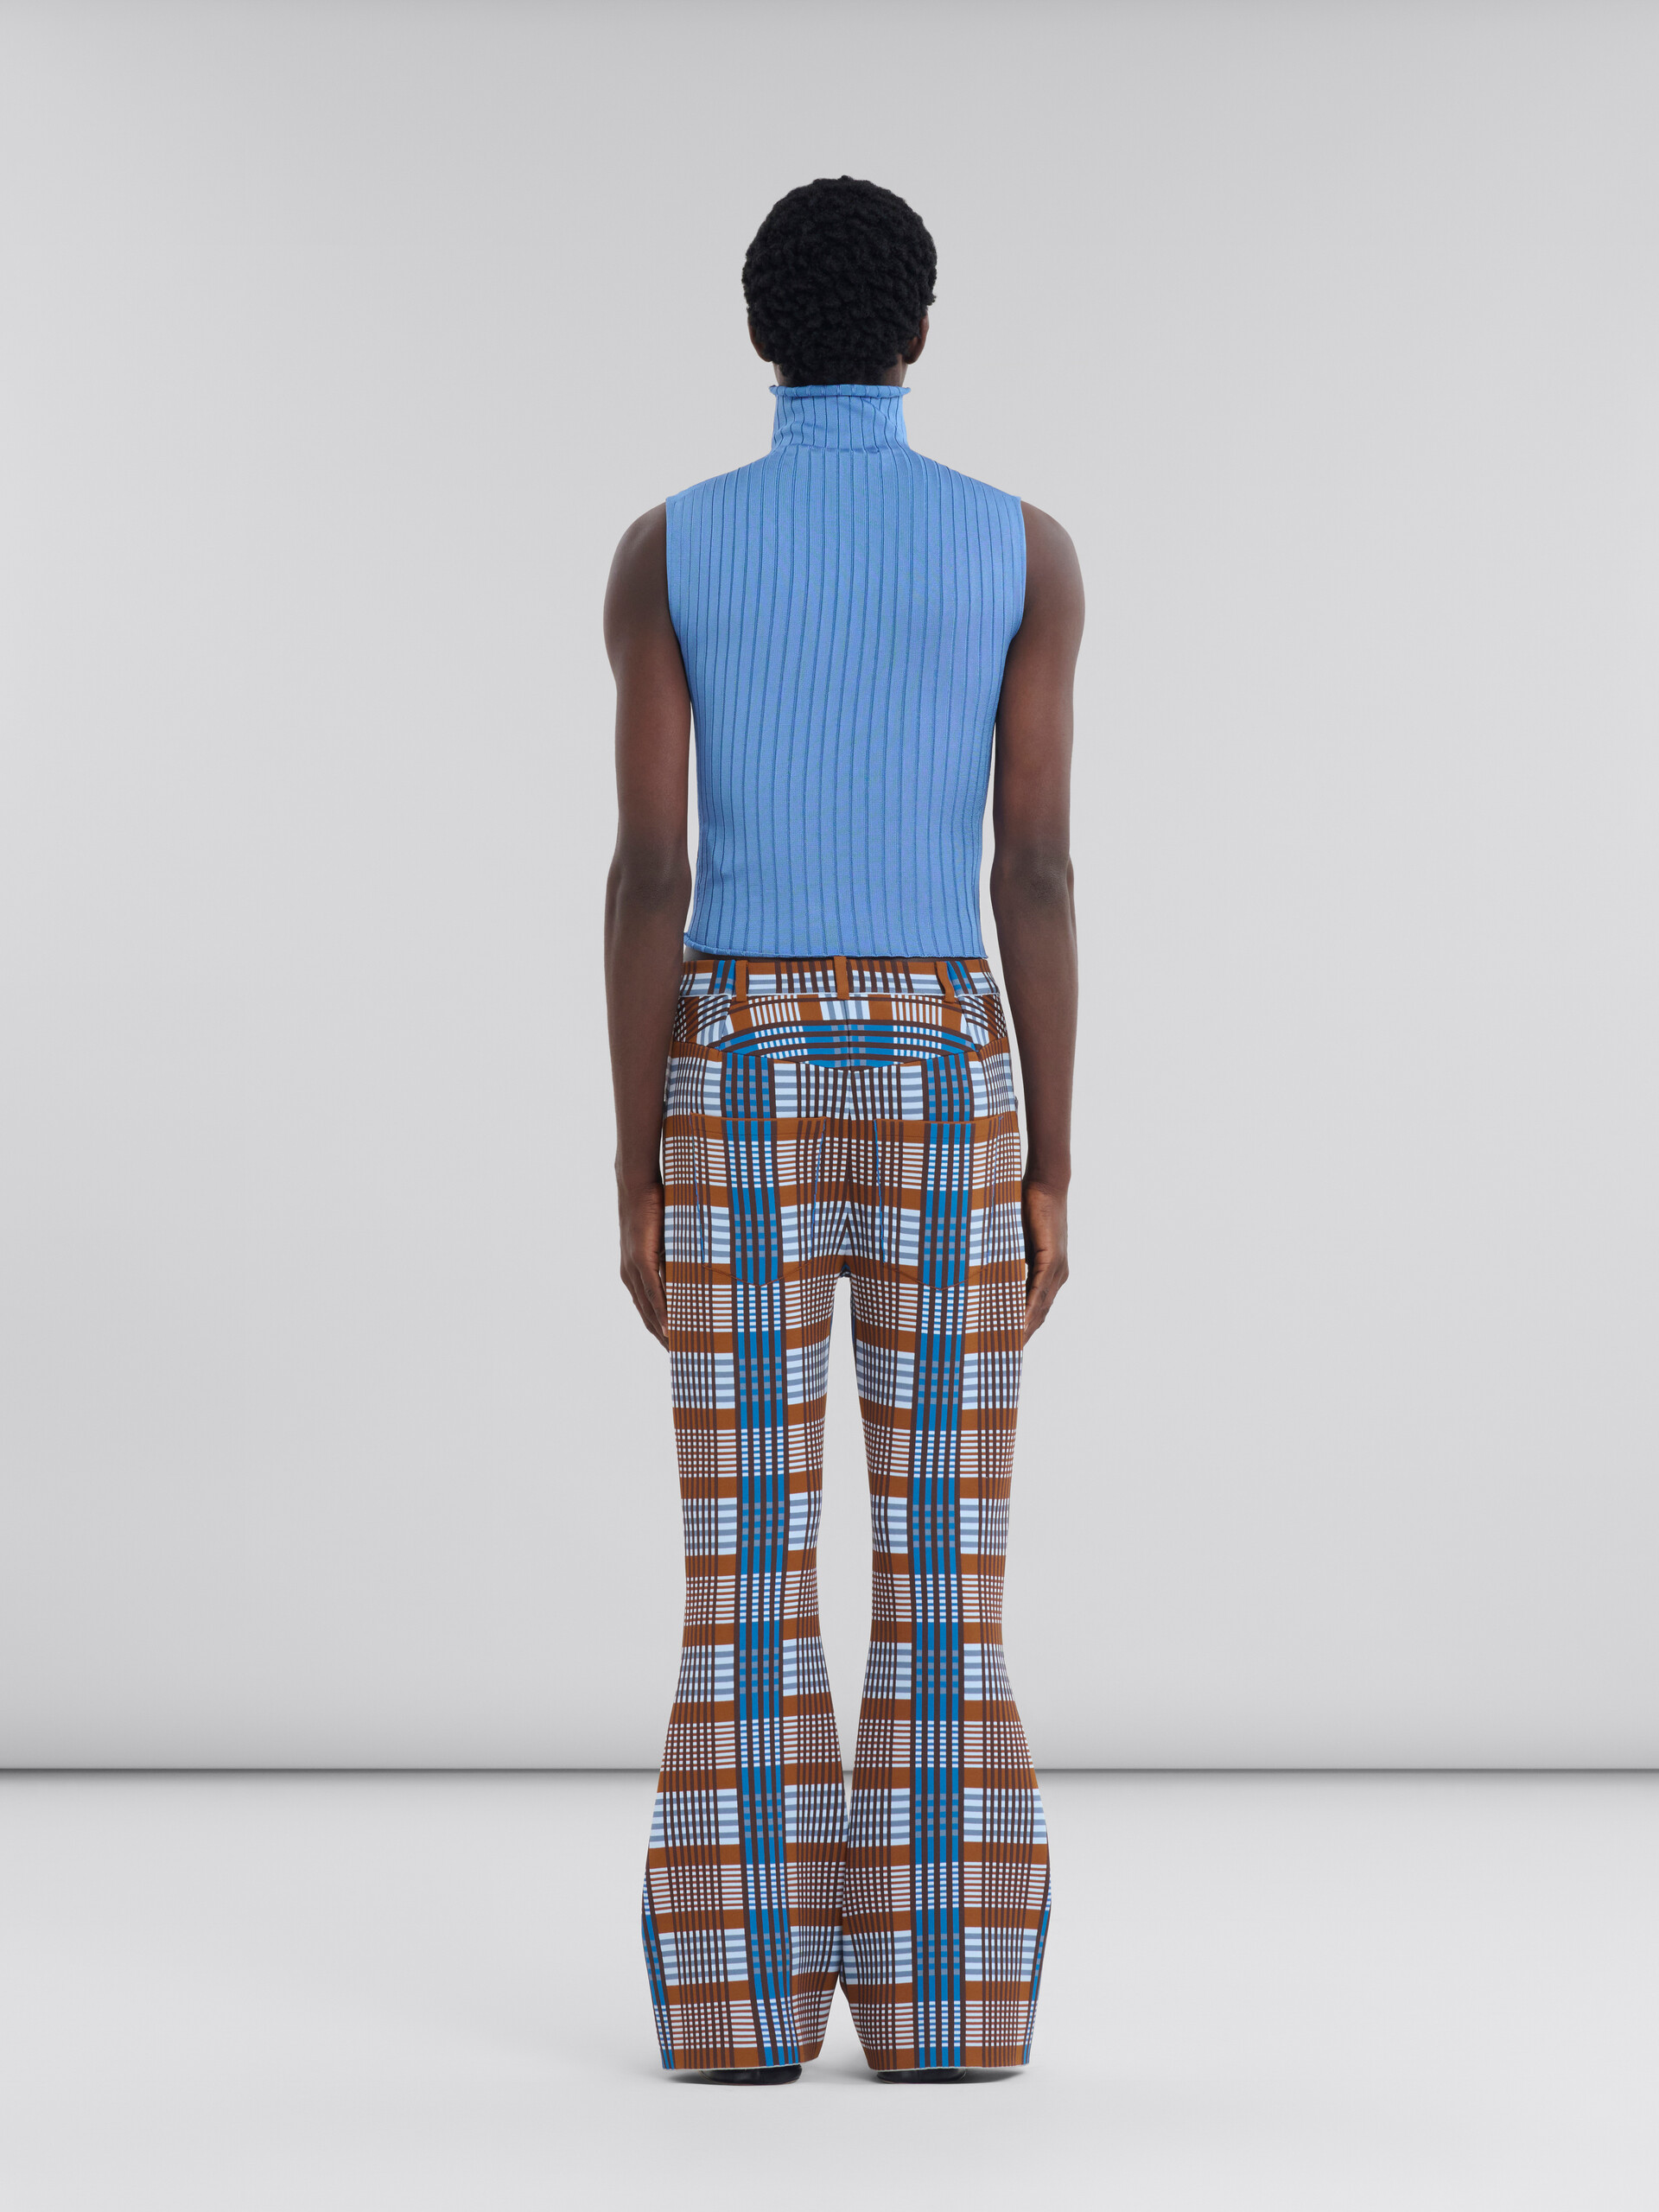 Pantaloni in maglia tecnica a quadri blu e marrone - Pantaloni - Image 3